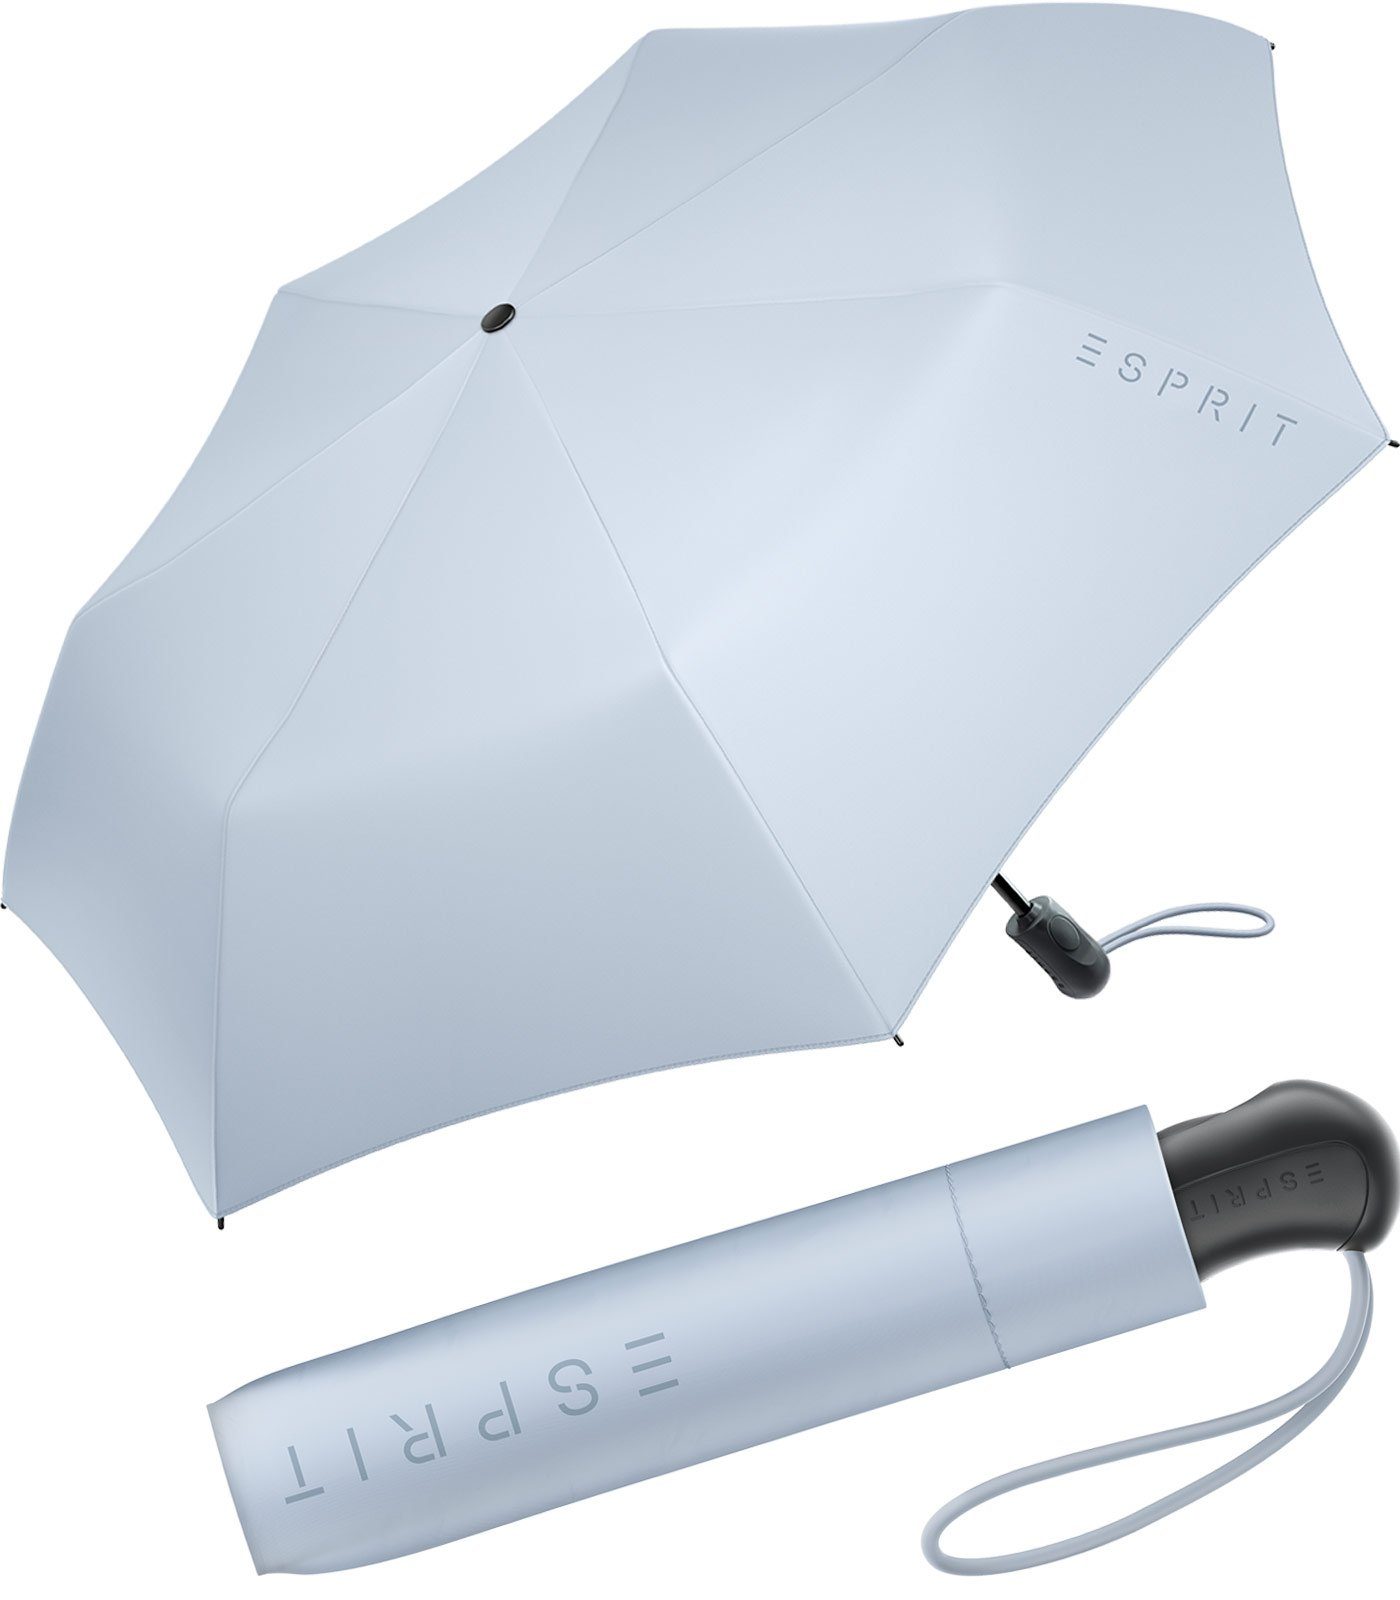 Esprit Taschenregenschirm Damen Easymatic Light Auf-Zu Automatik FJ 2022, stabil und praktisch, in den neuen Trendfarben blau